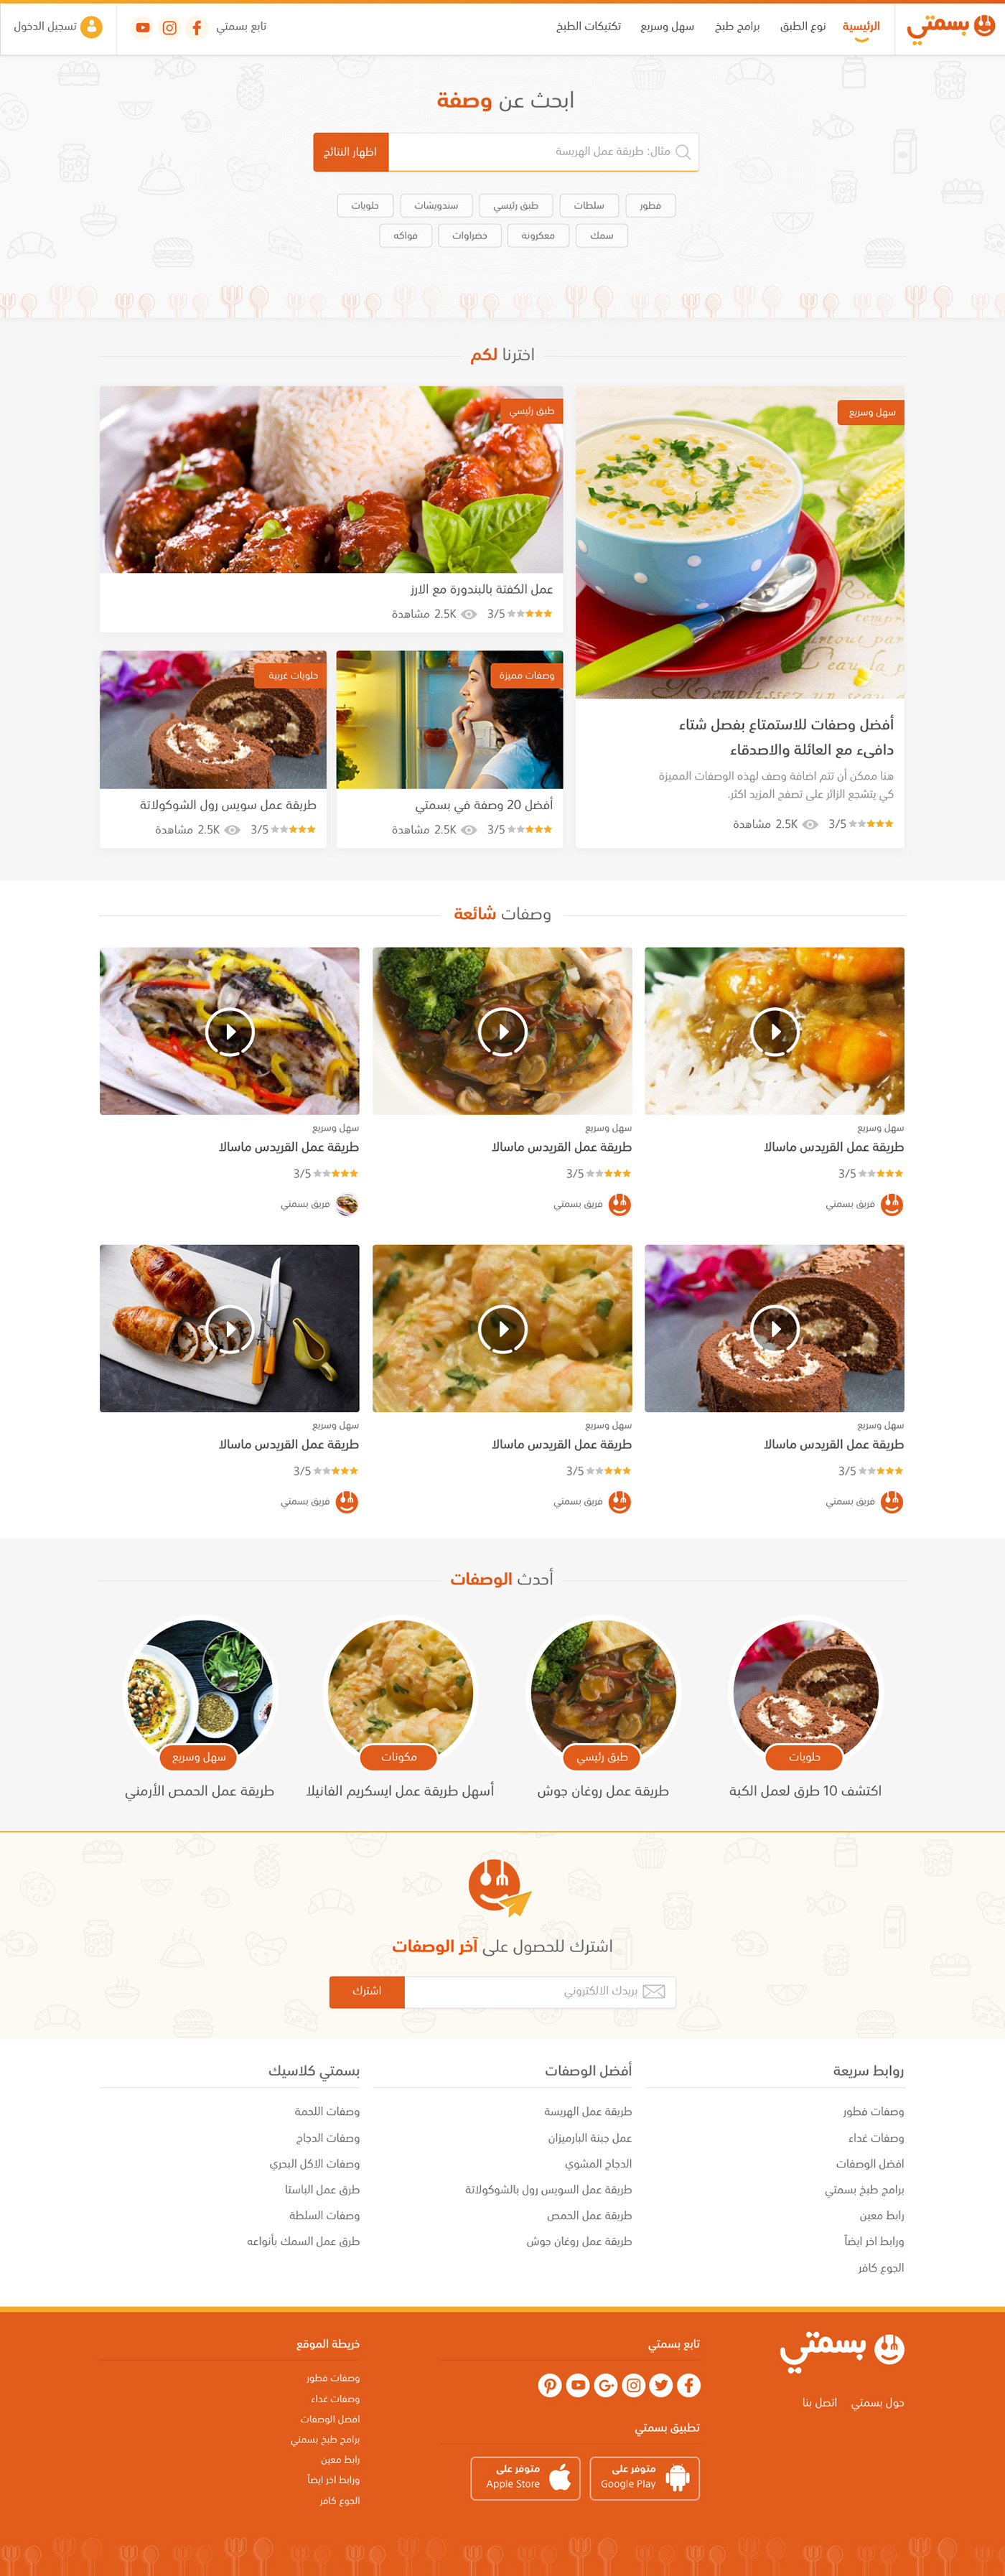 basmaty redesign ishadeed MENA cooking Food  recipes ux UI